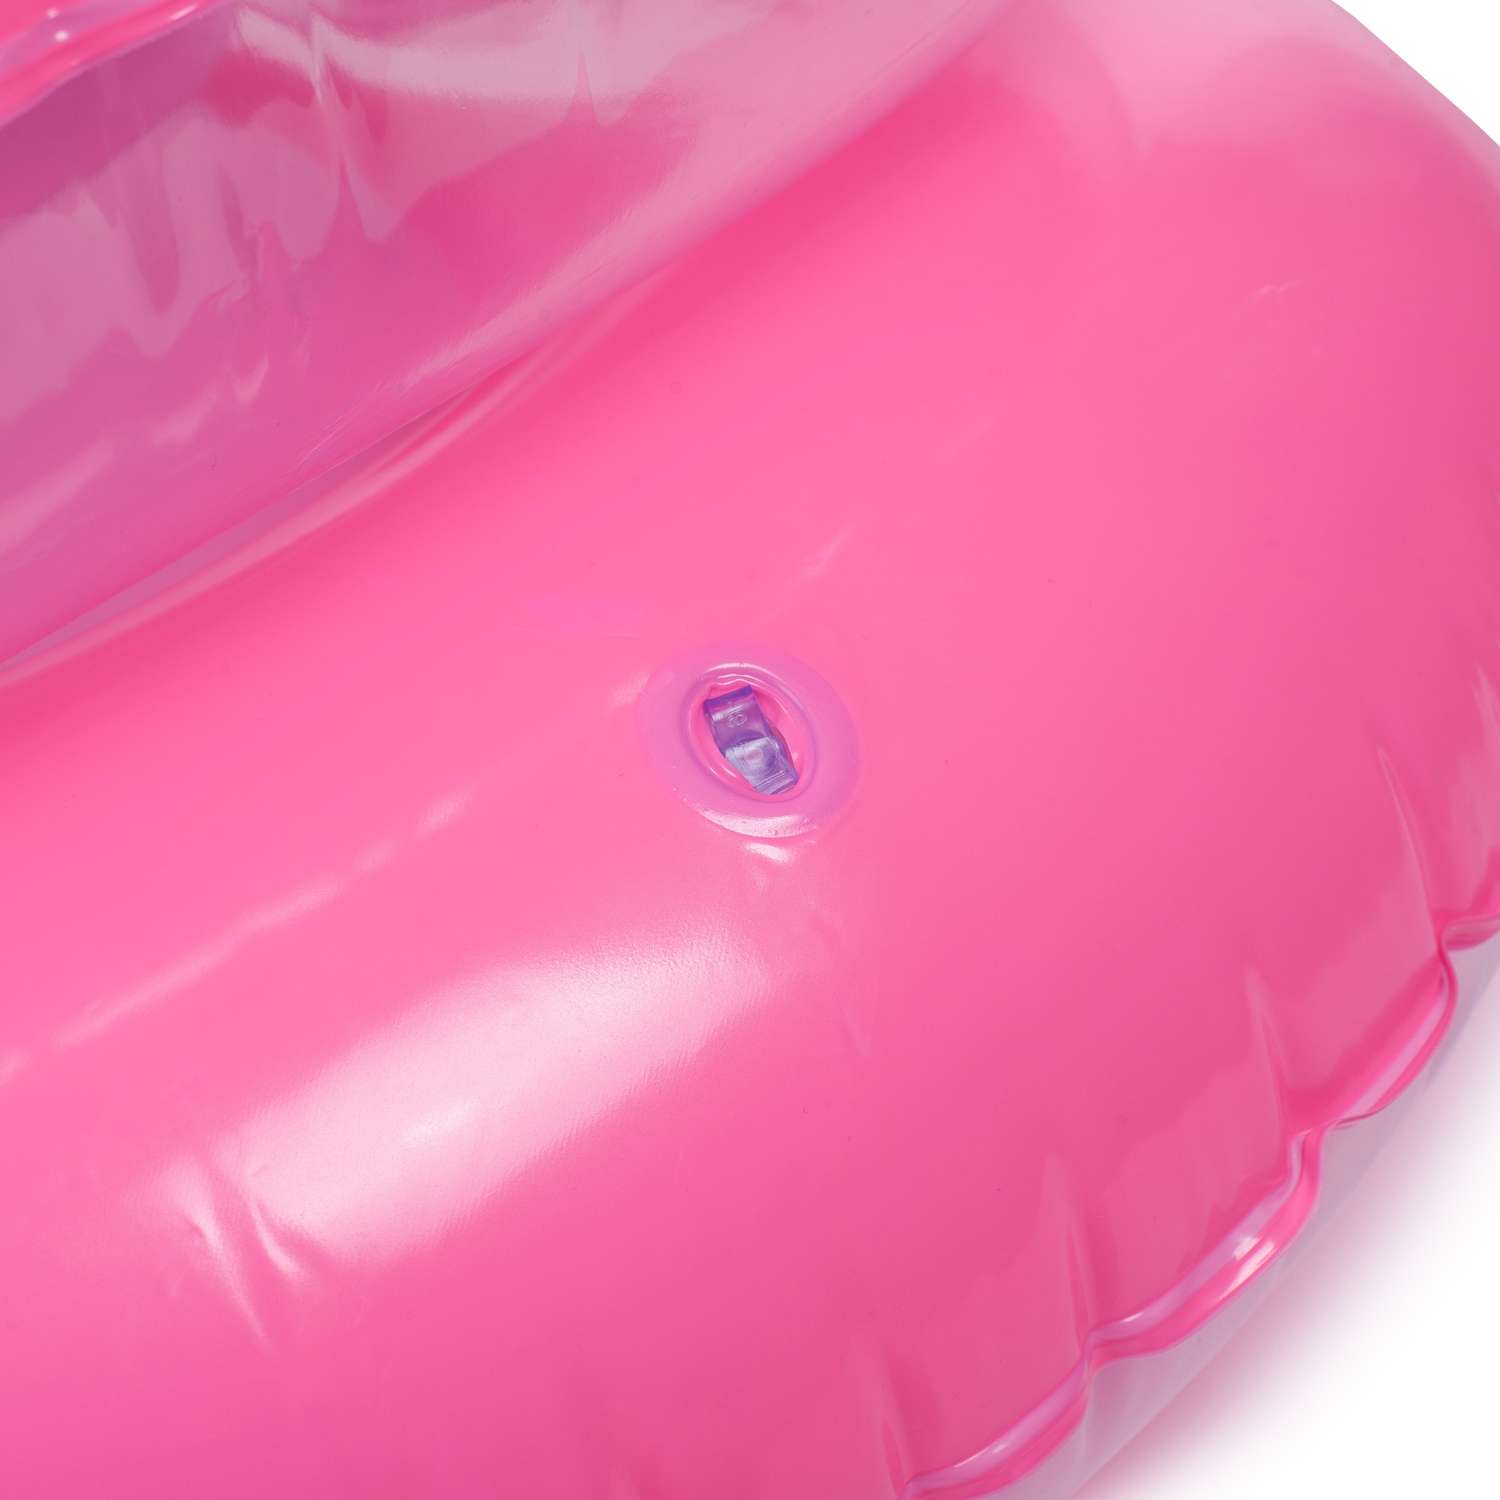 Кресло надувное Bestway Inflatables детское Розовое - фото 6